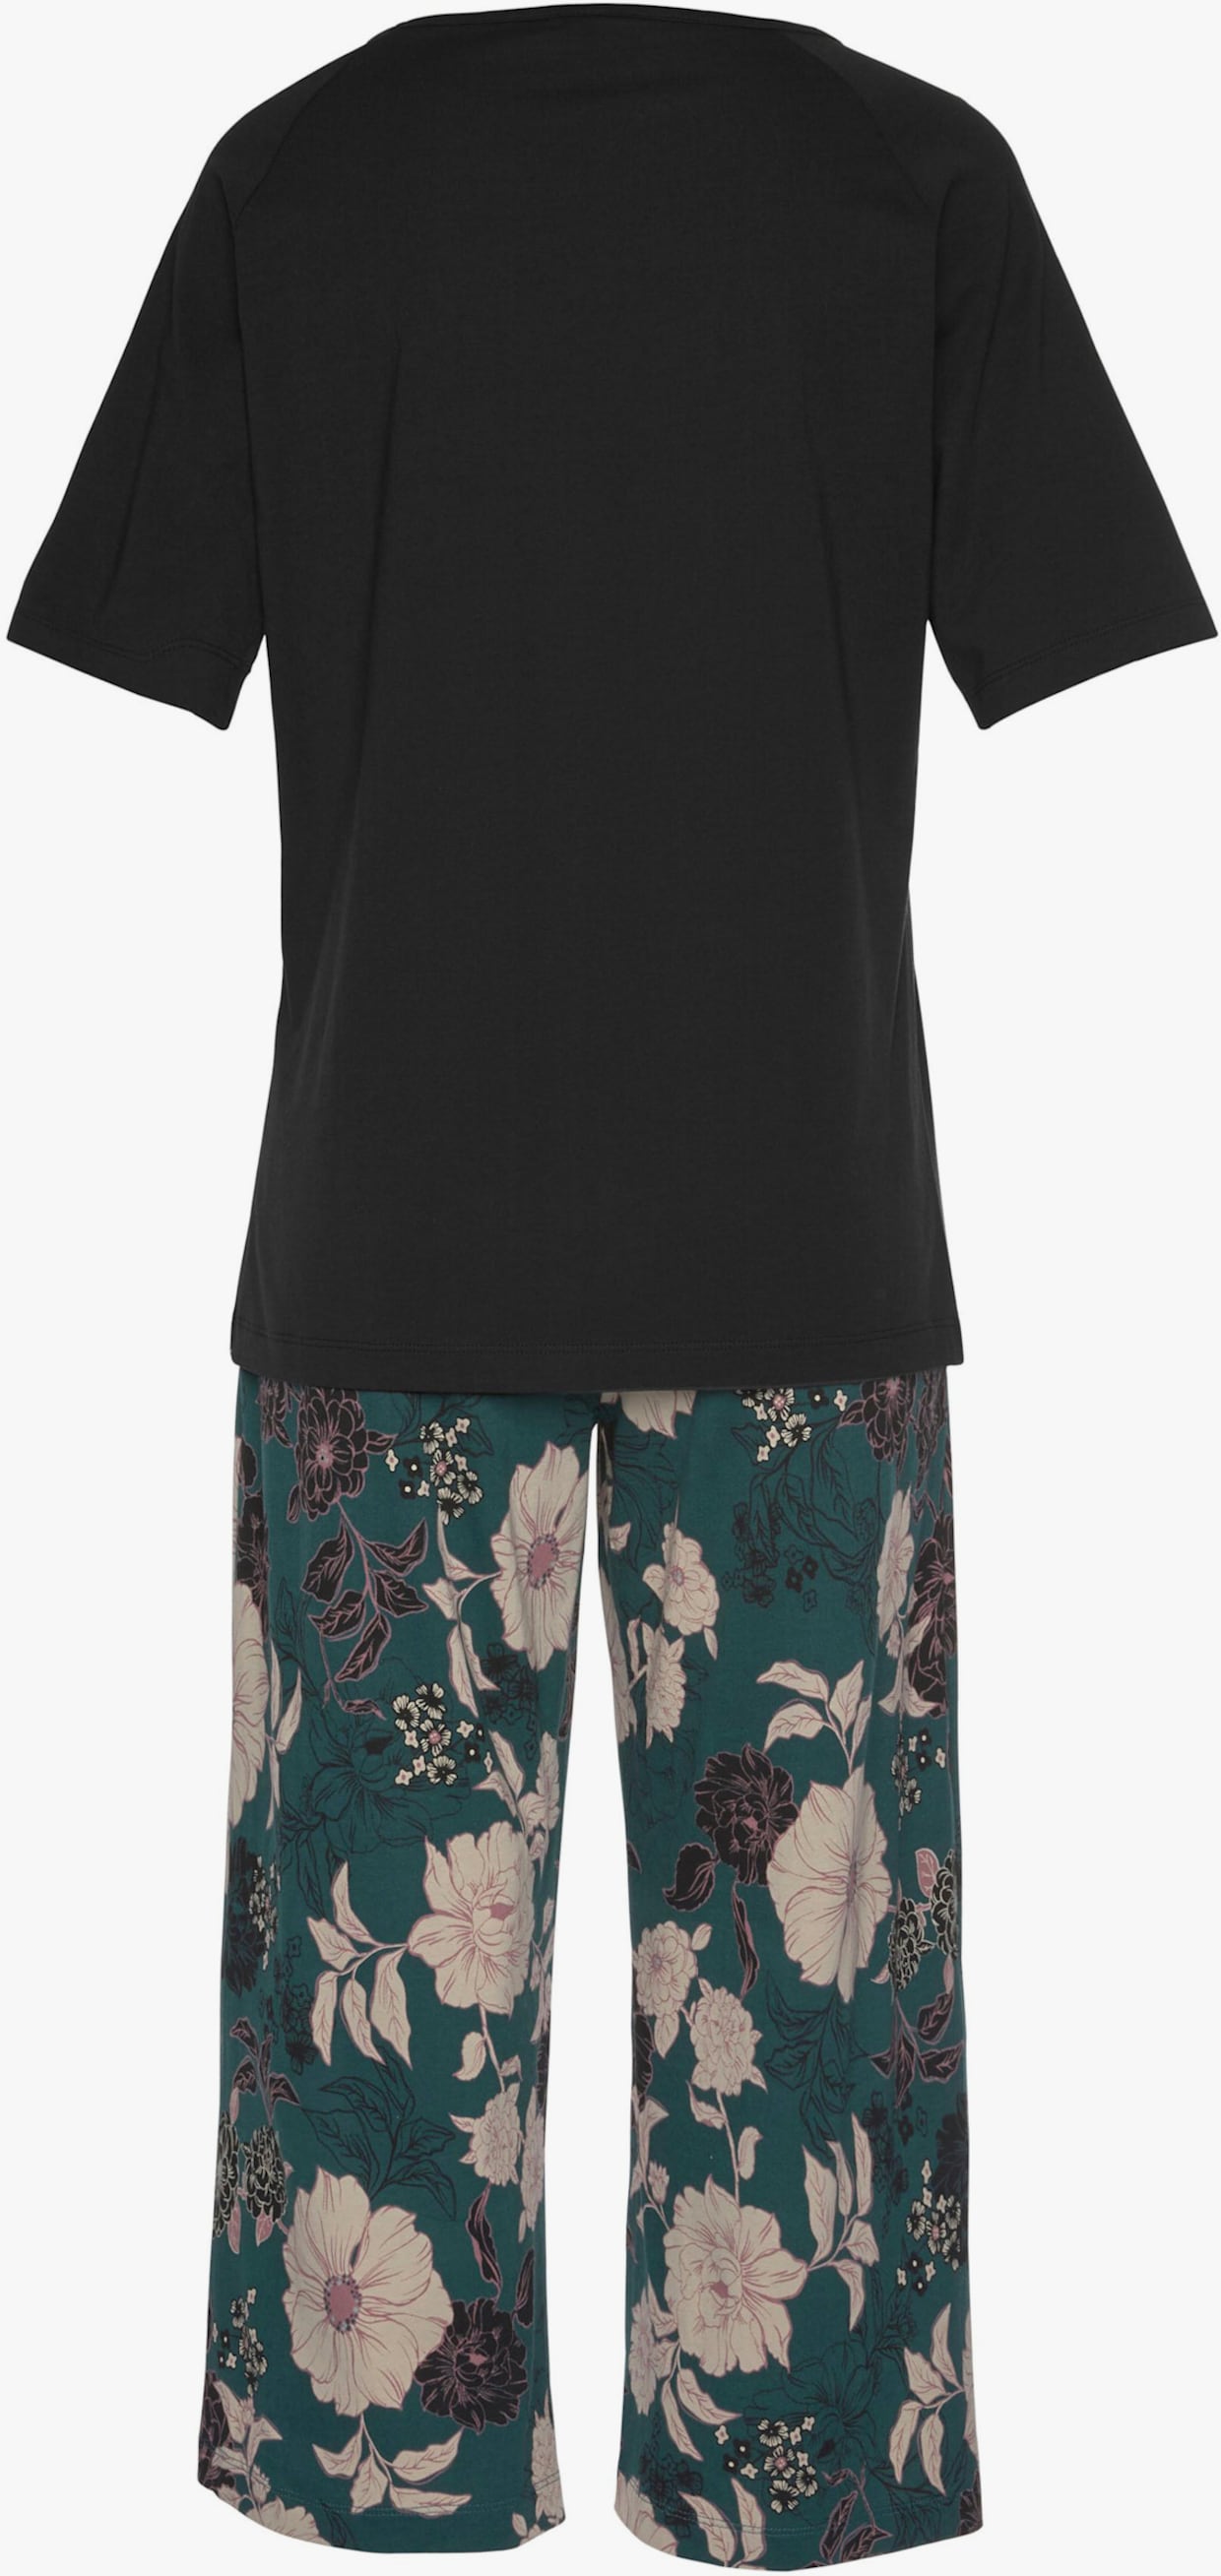 s.Oliver Capri-pyjama - zwart/donkergroen gedessineerd